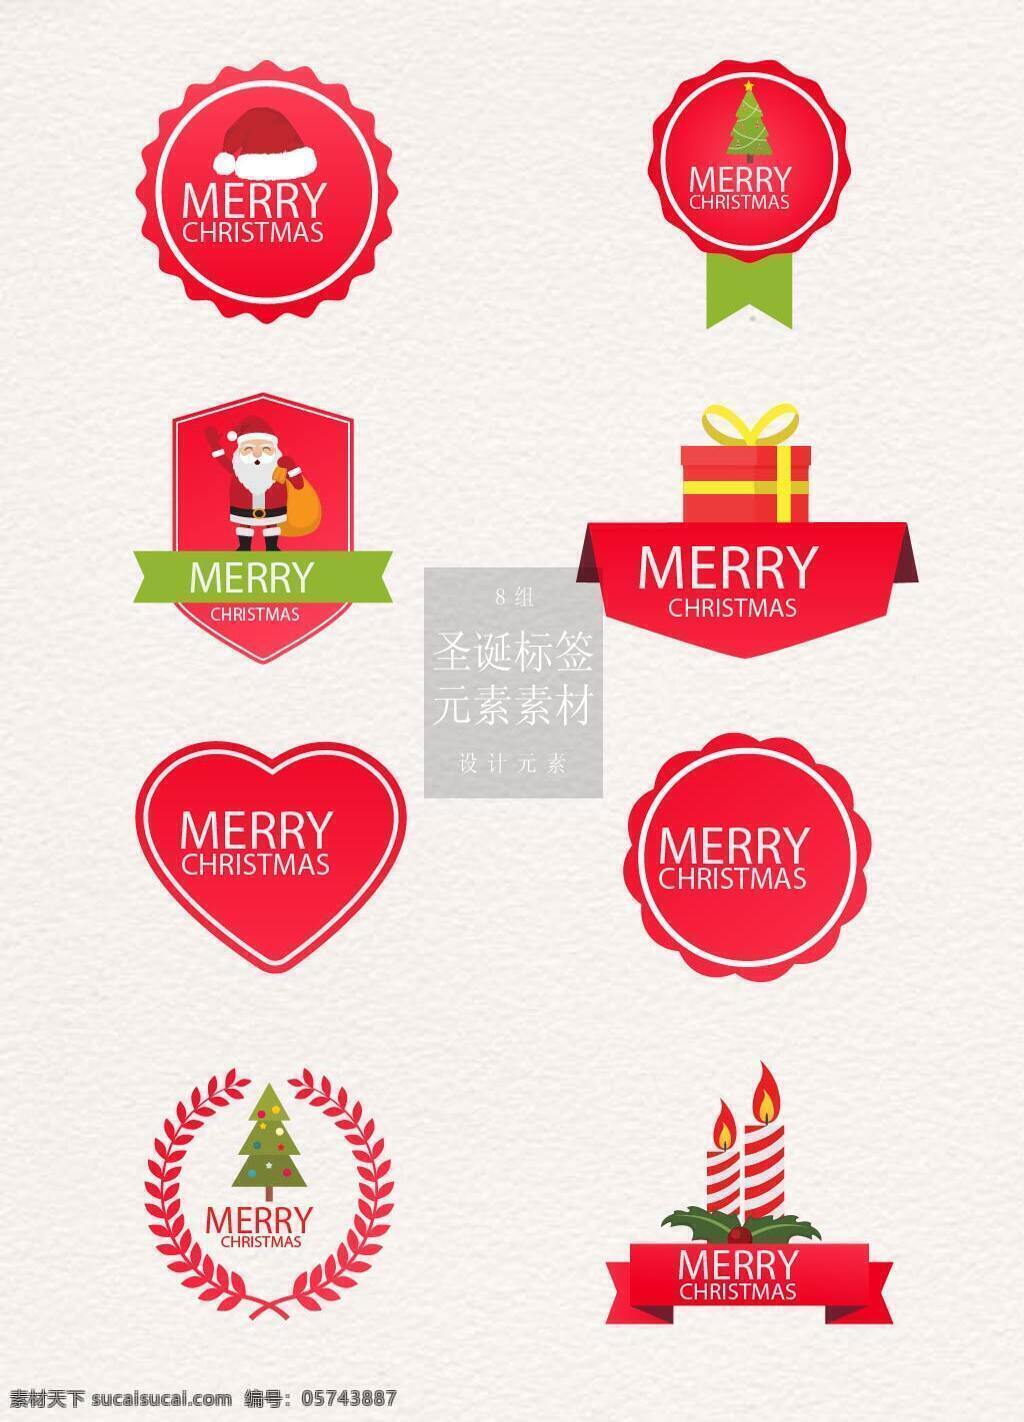 红色 主题 圣诞 标签 礼物 圣诞节 矢量素材 圣诞帽 圣诞老人 圣诞树 蜡烛